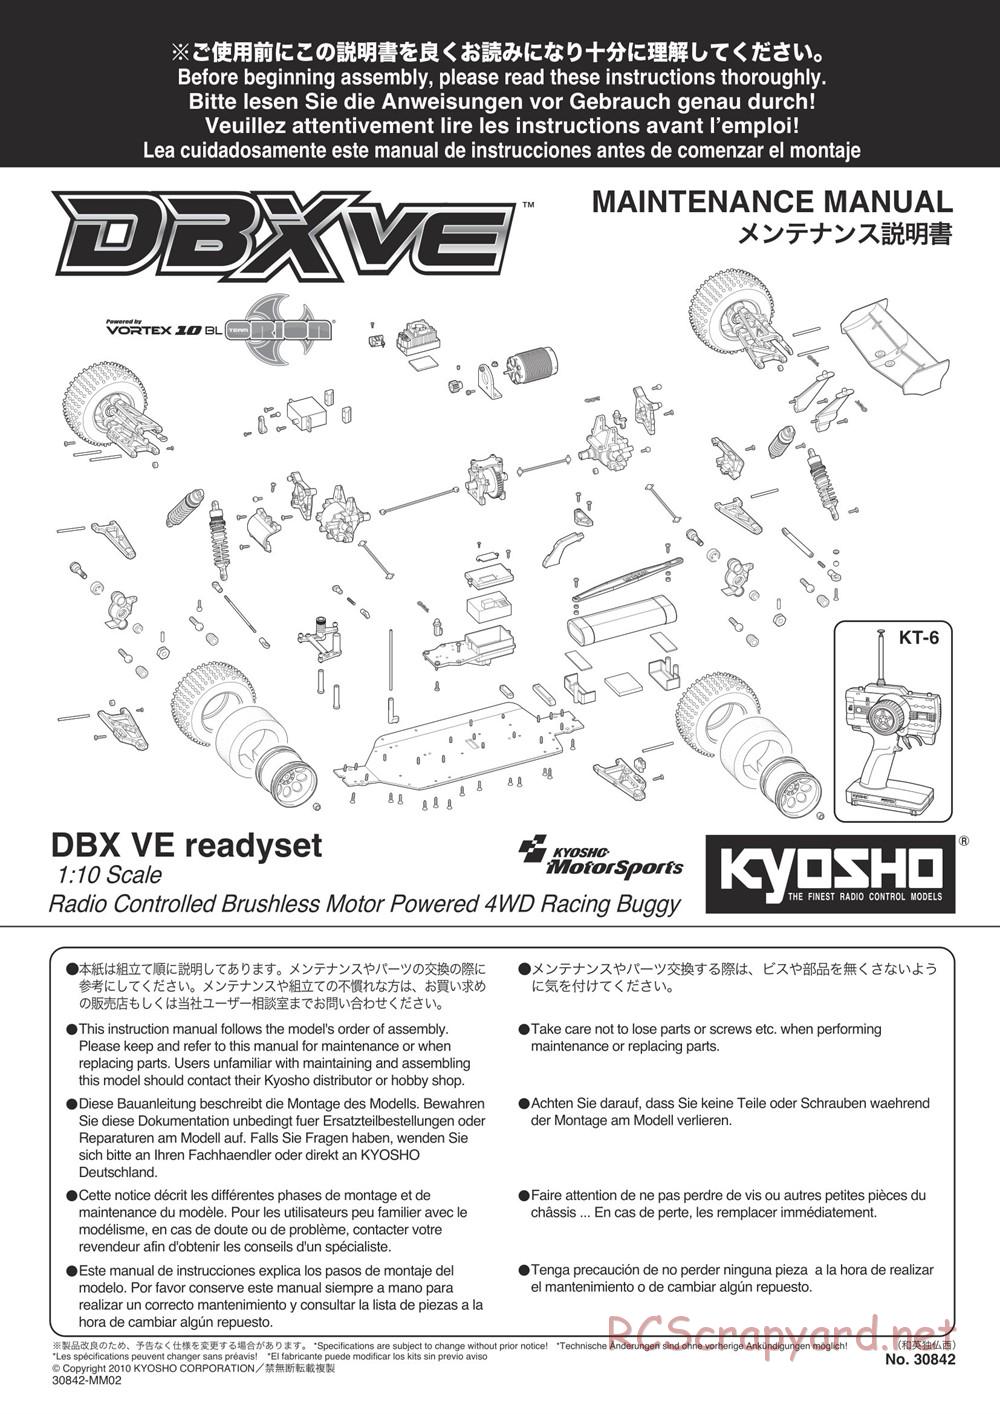 Kyosho - DBX-VE - Manual - Page 1